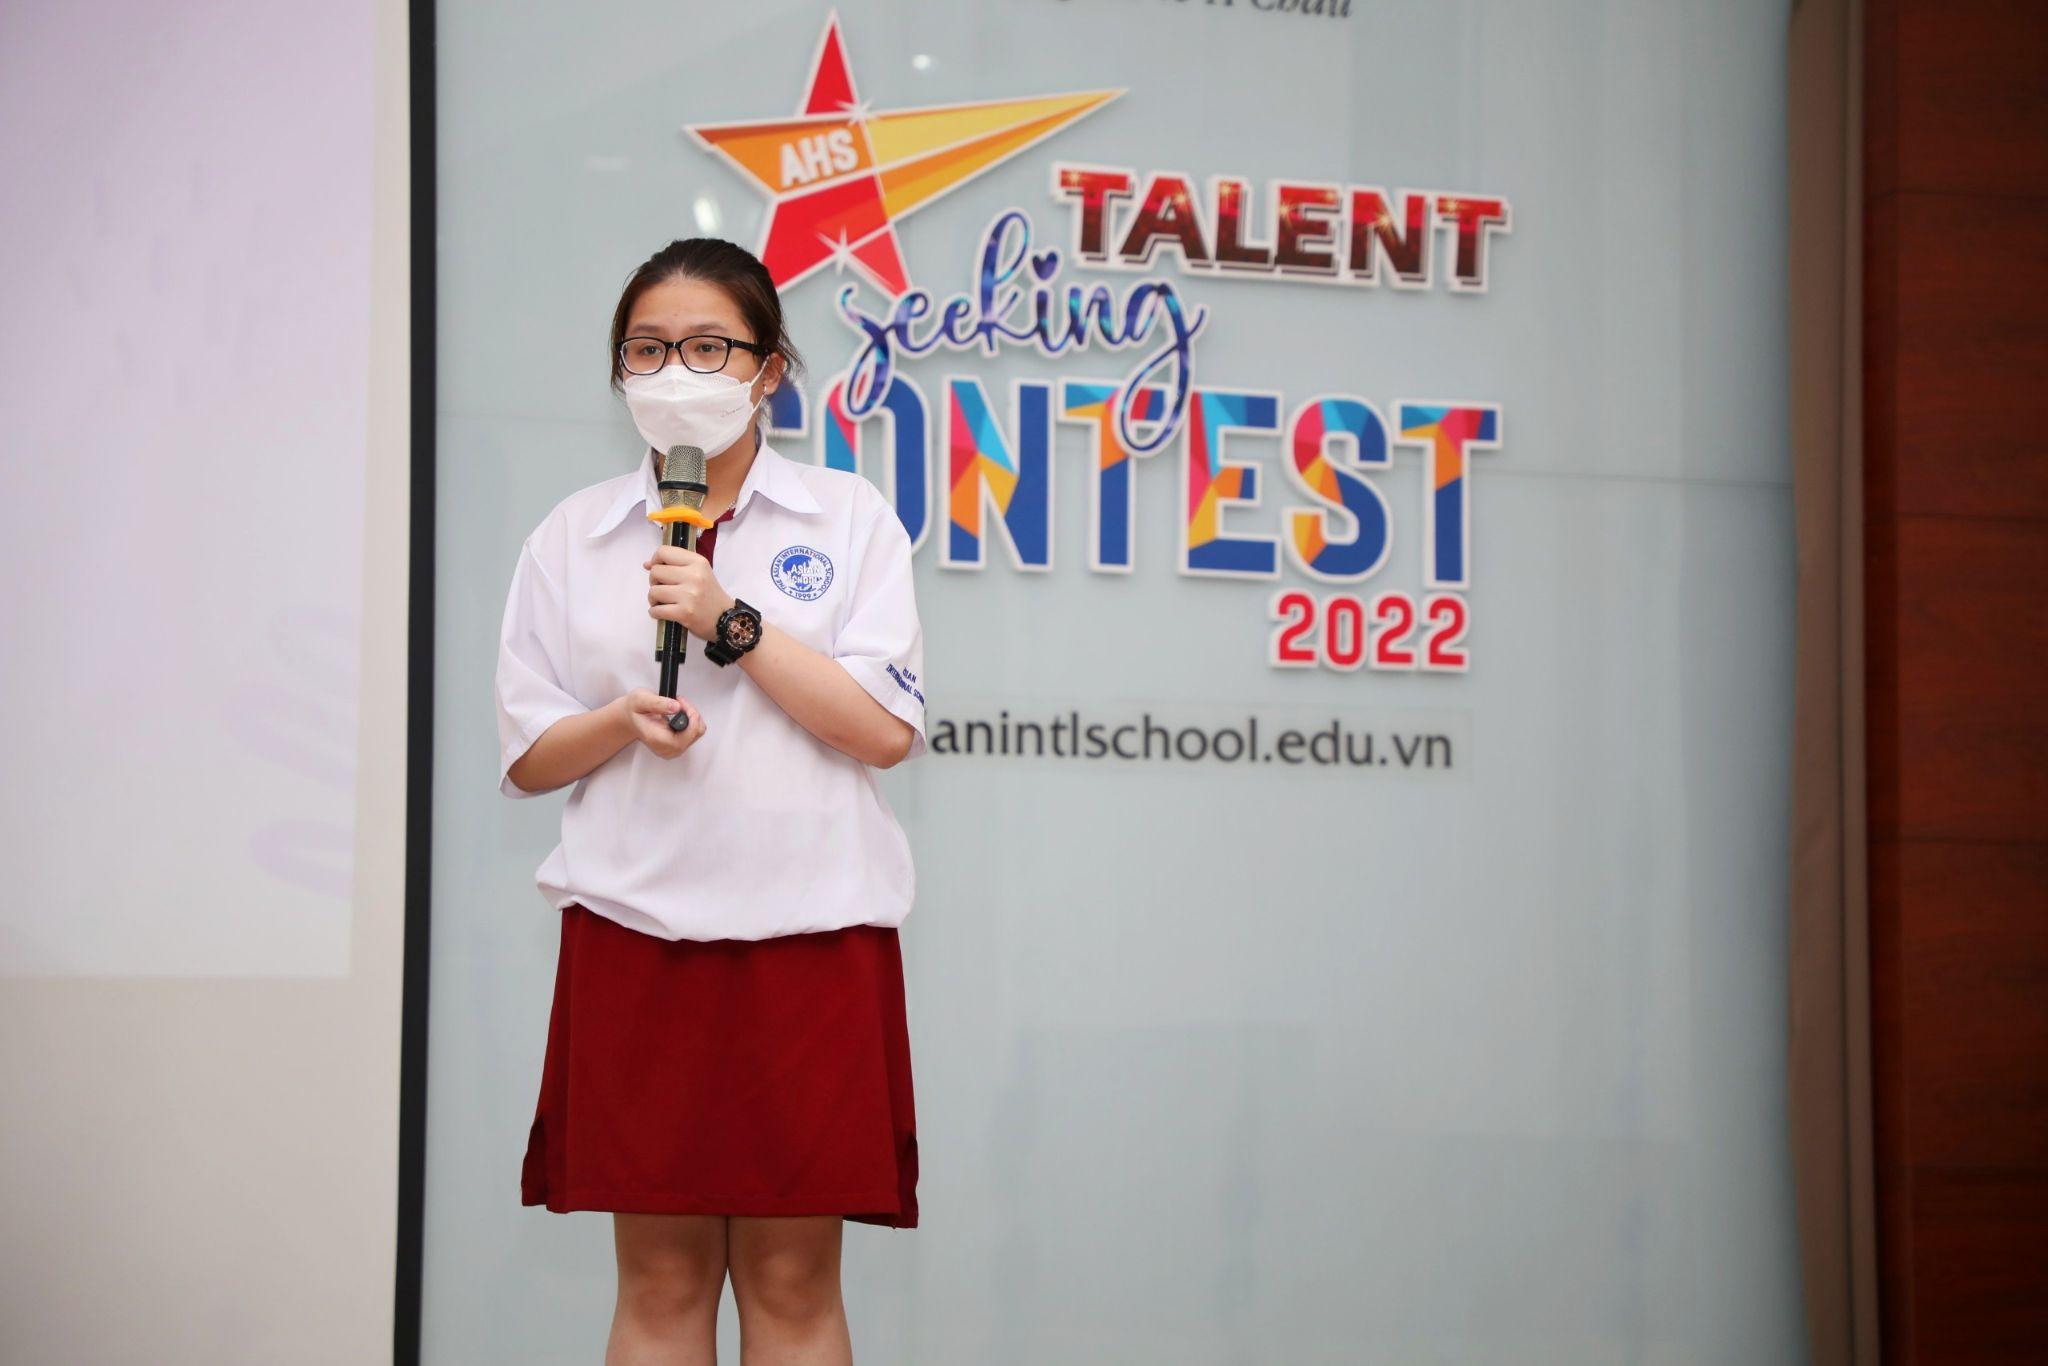 Sôi nổi cuộc thi Talent Seeking Contest 2022